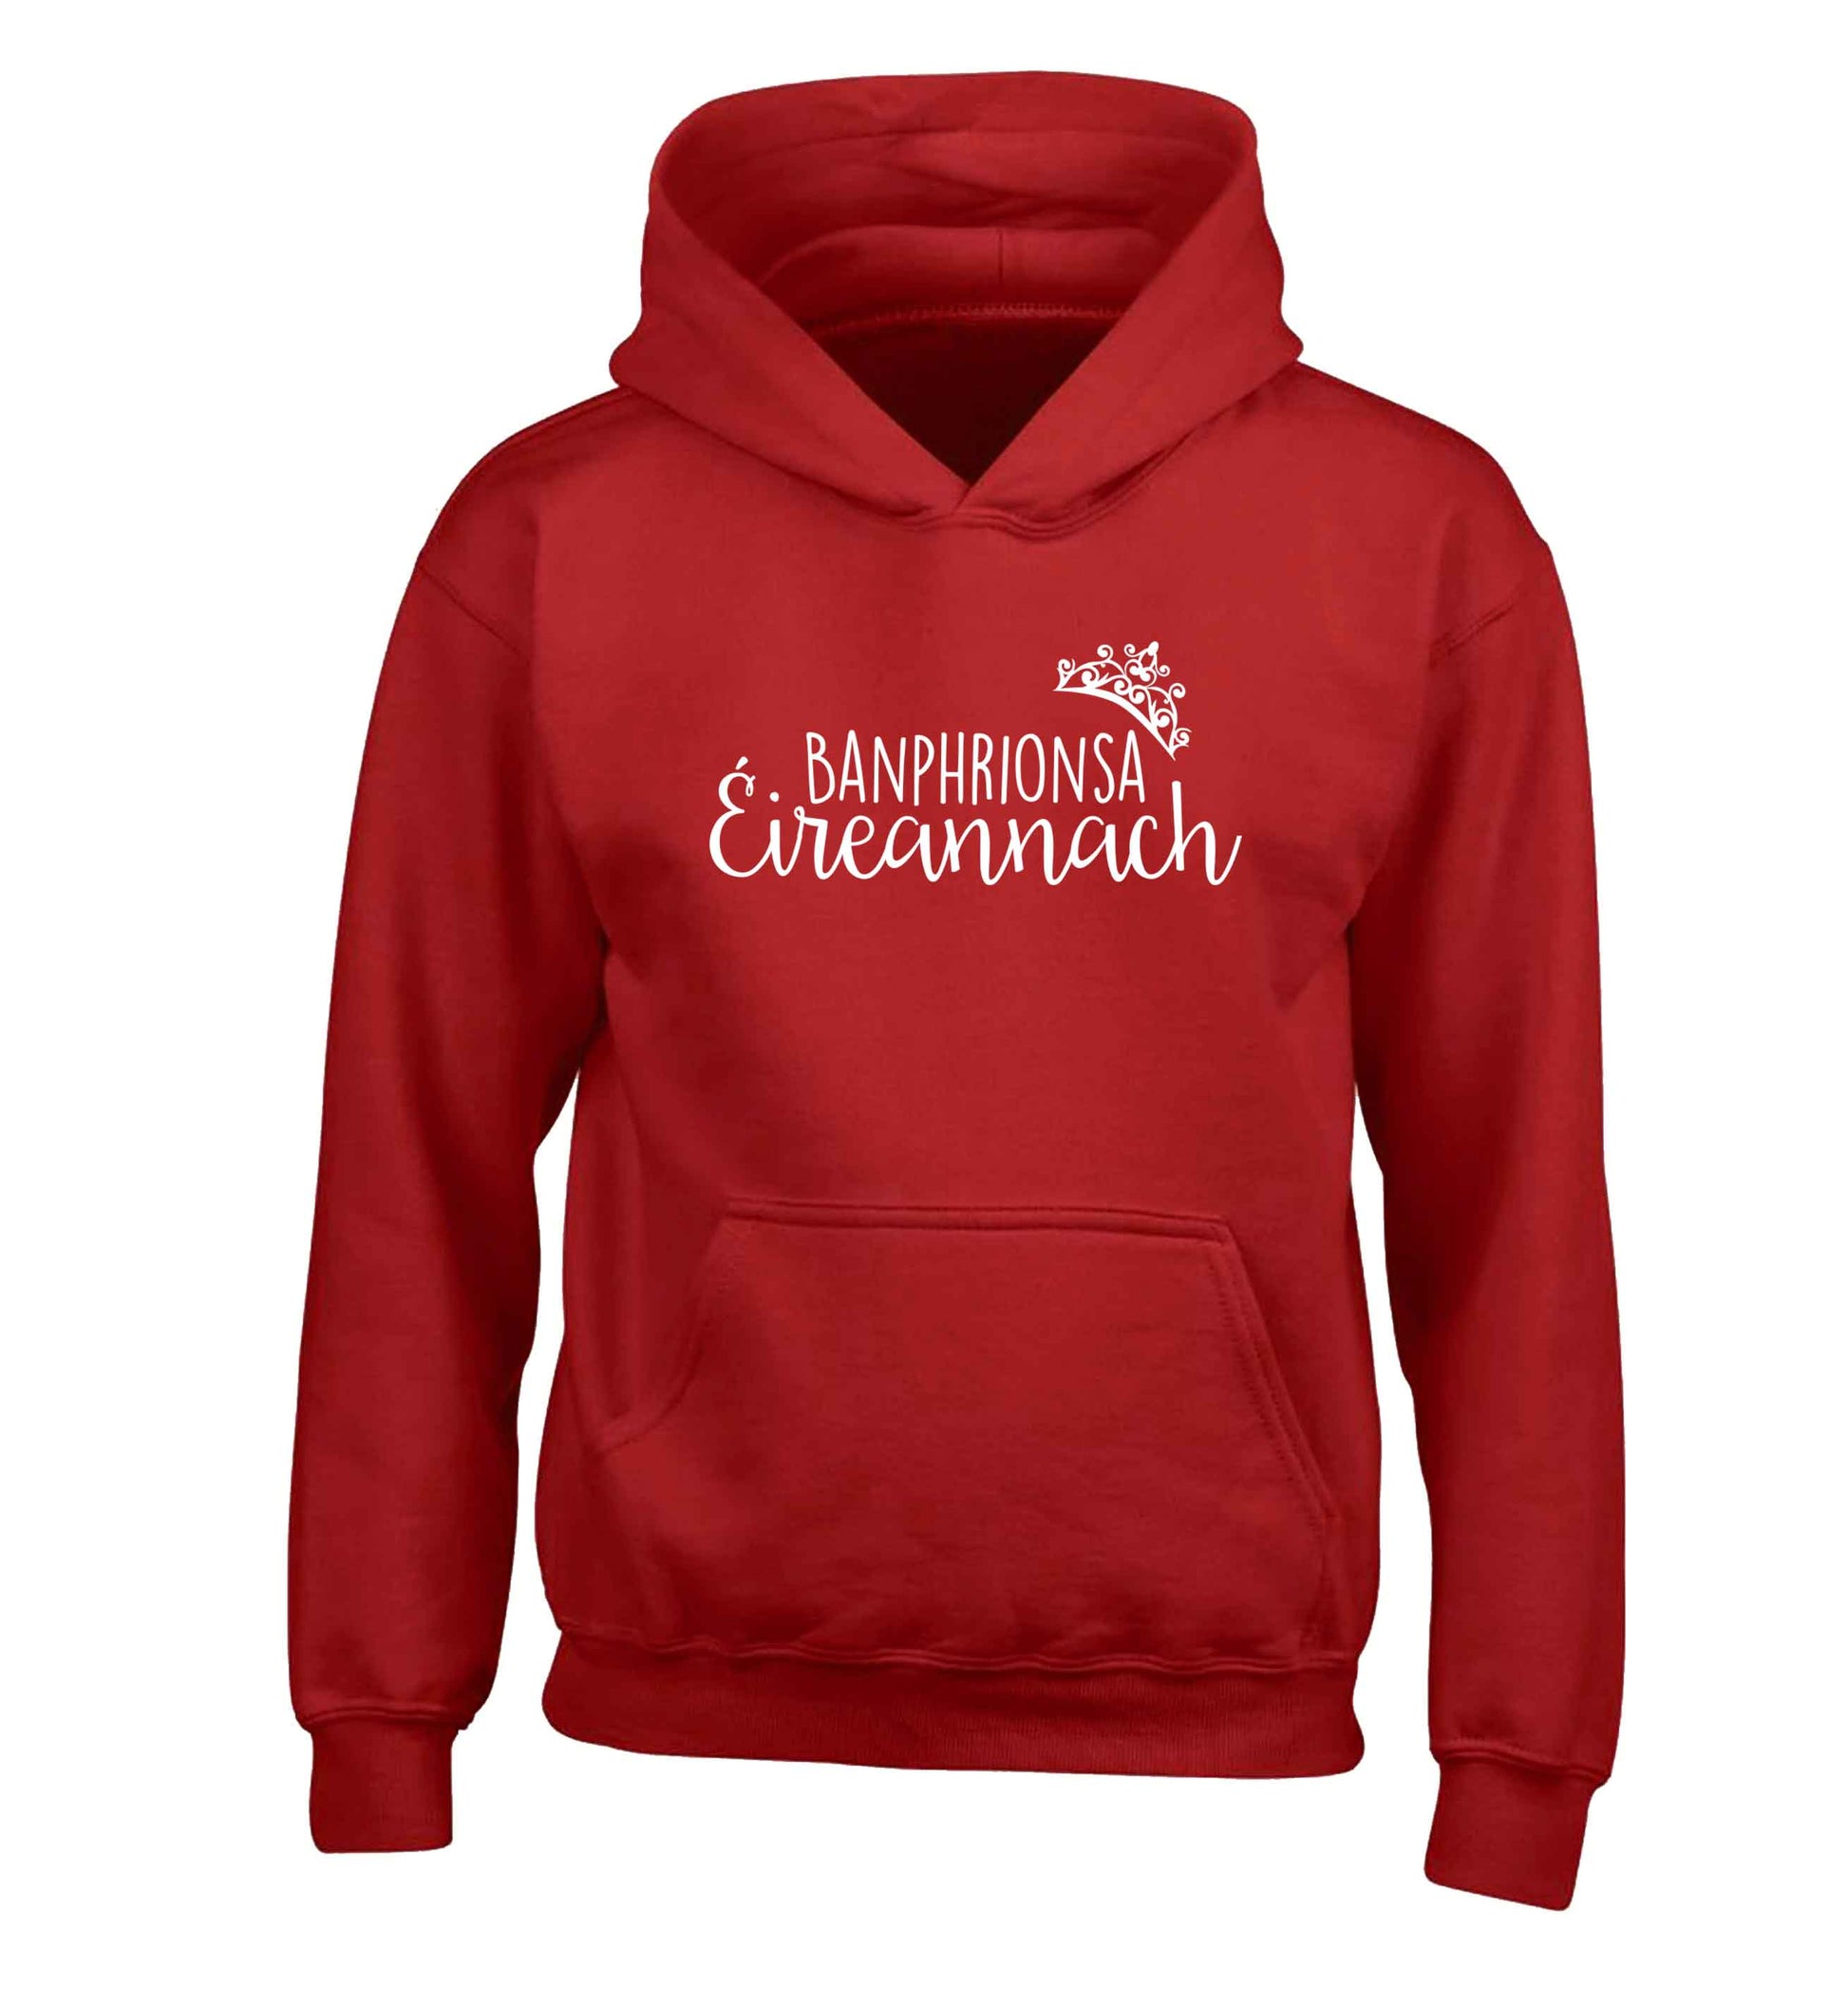 Banphrionsa eireannach children's red hoodie 12-13 Years